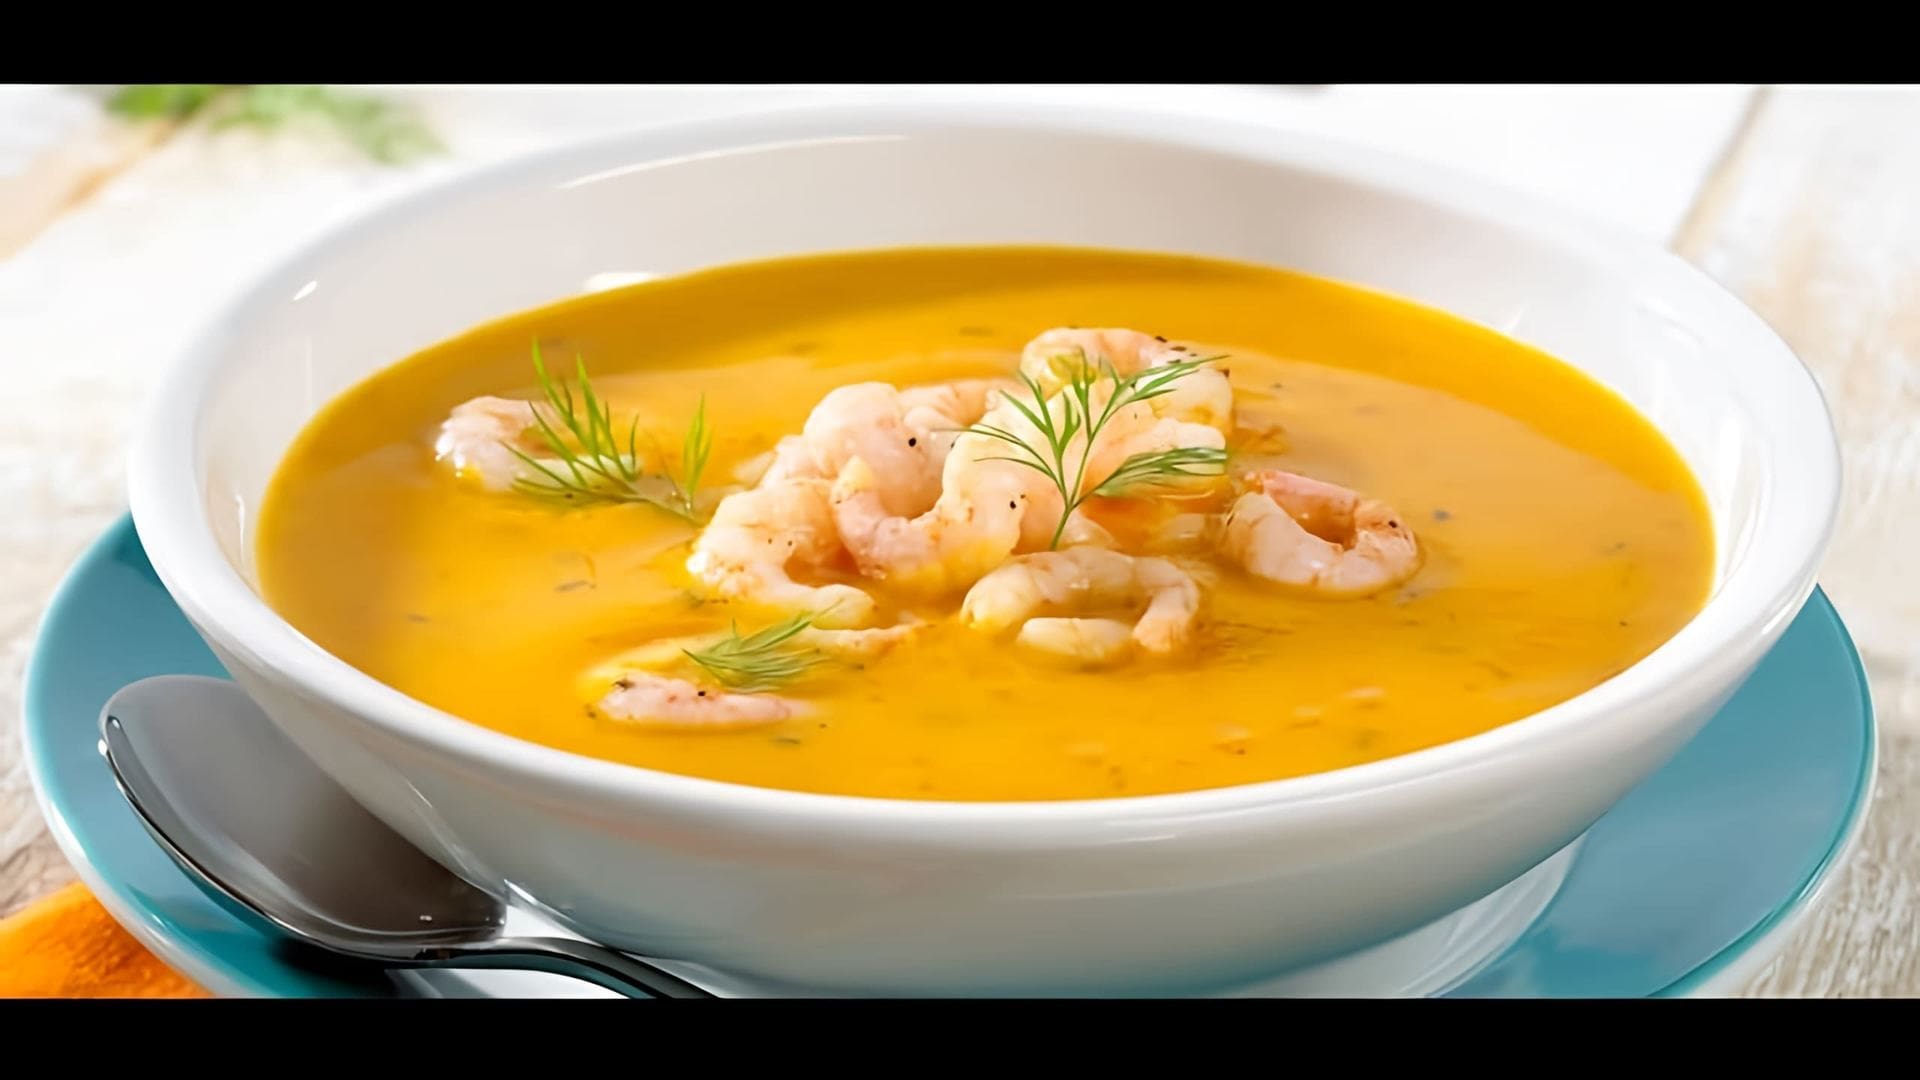 В этом видео демонстрируется простой рецепт приготовления тыквенного супа-пюре с креветками